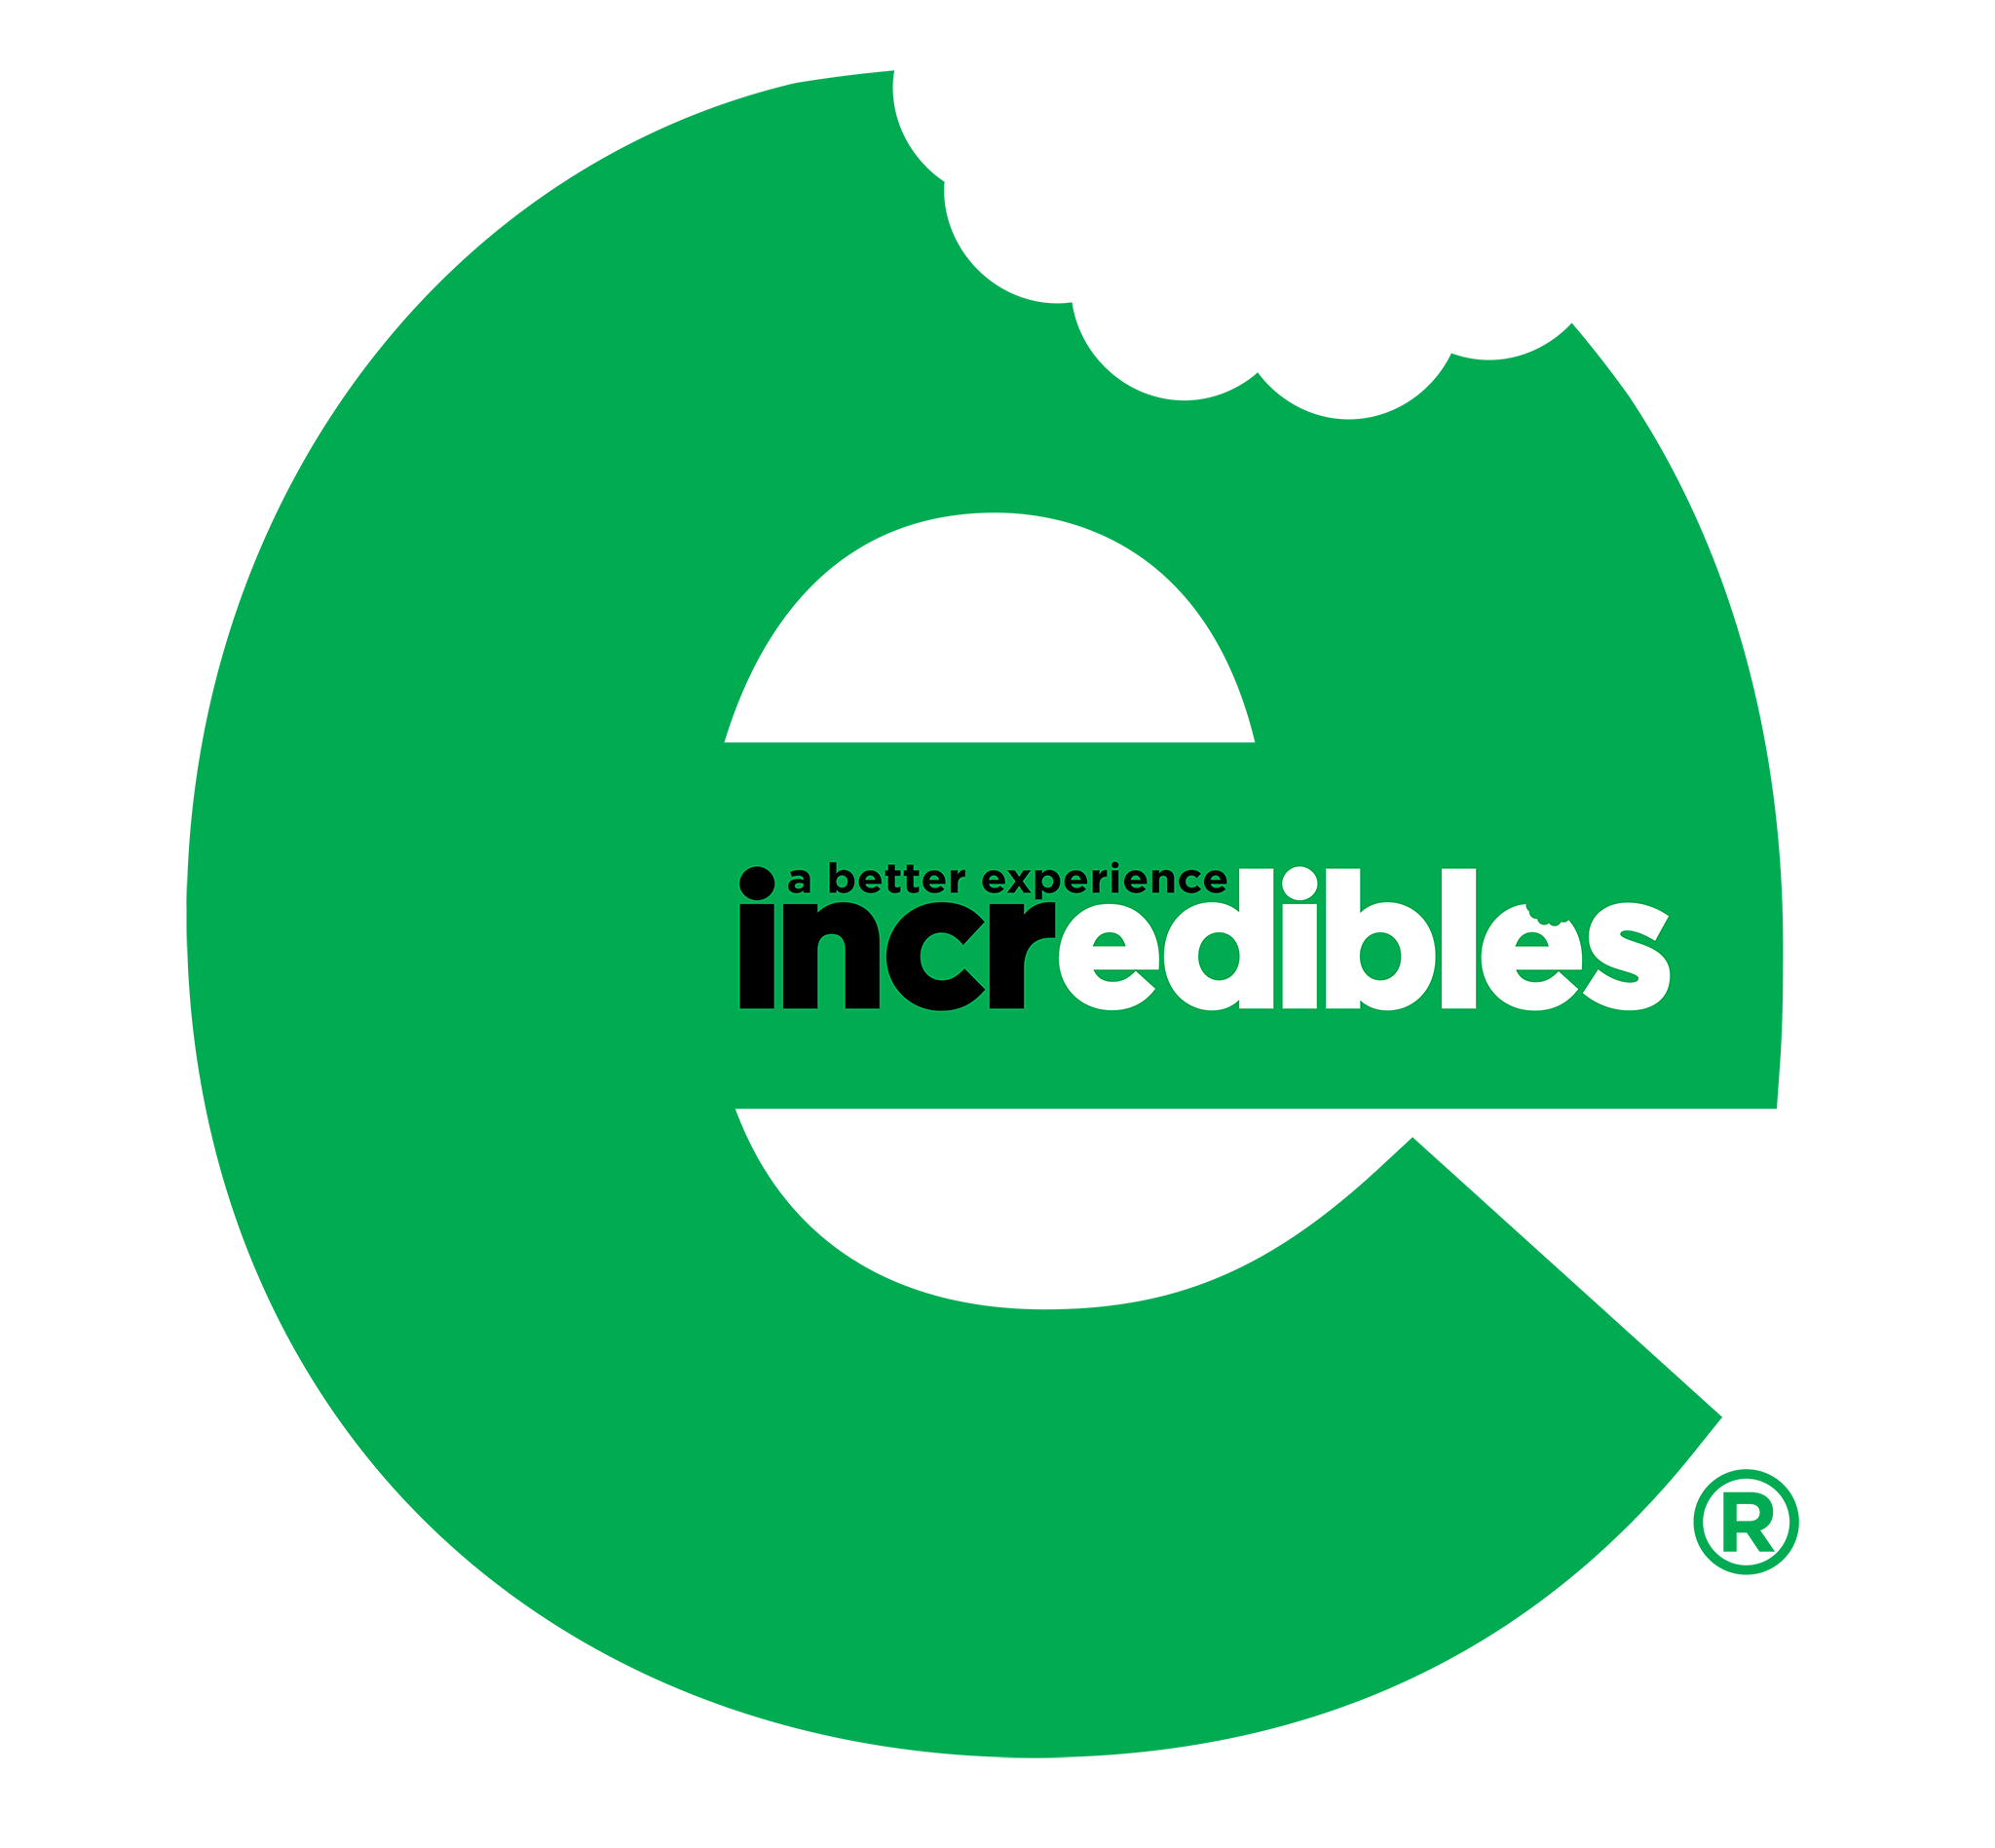 edible-incredibles-500mg-bars